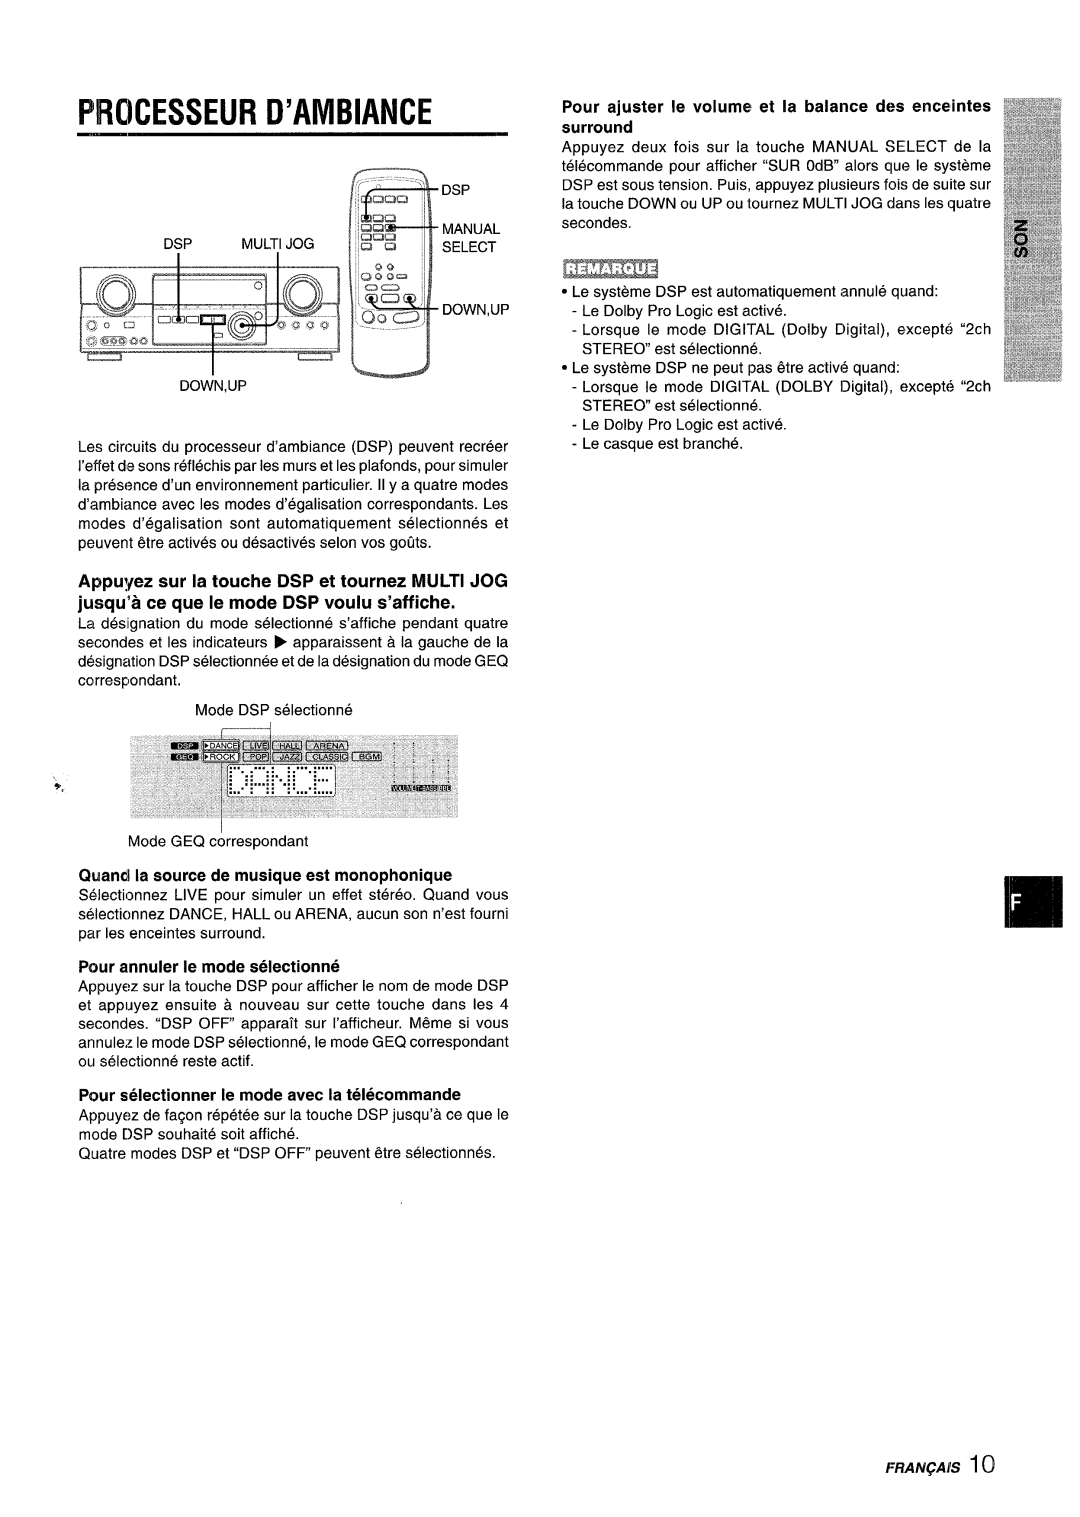 Sony AV-DV75 manual Pircicesseur D’Ambiance, Pour ajuster Ie volume! et la balance des enceintes surround 